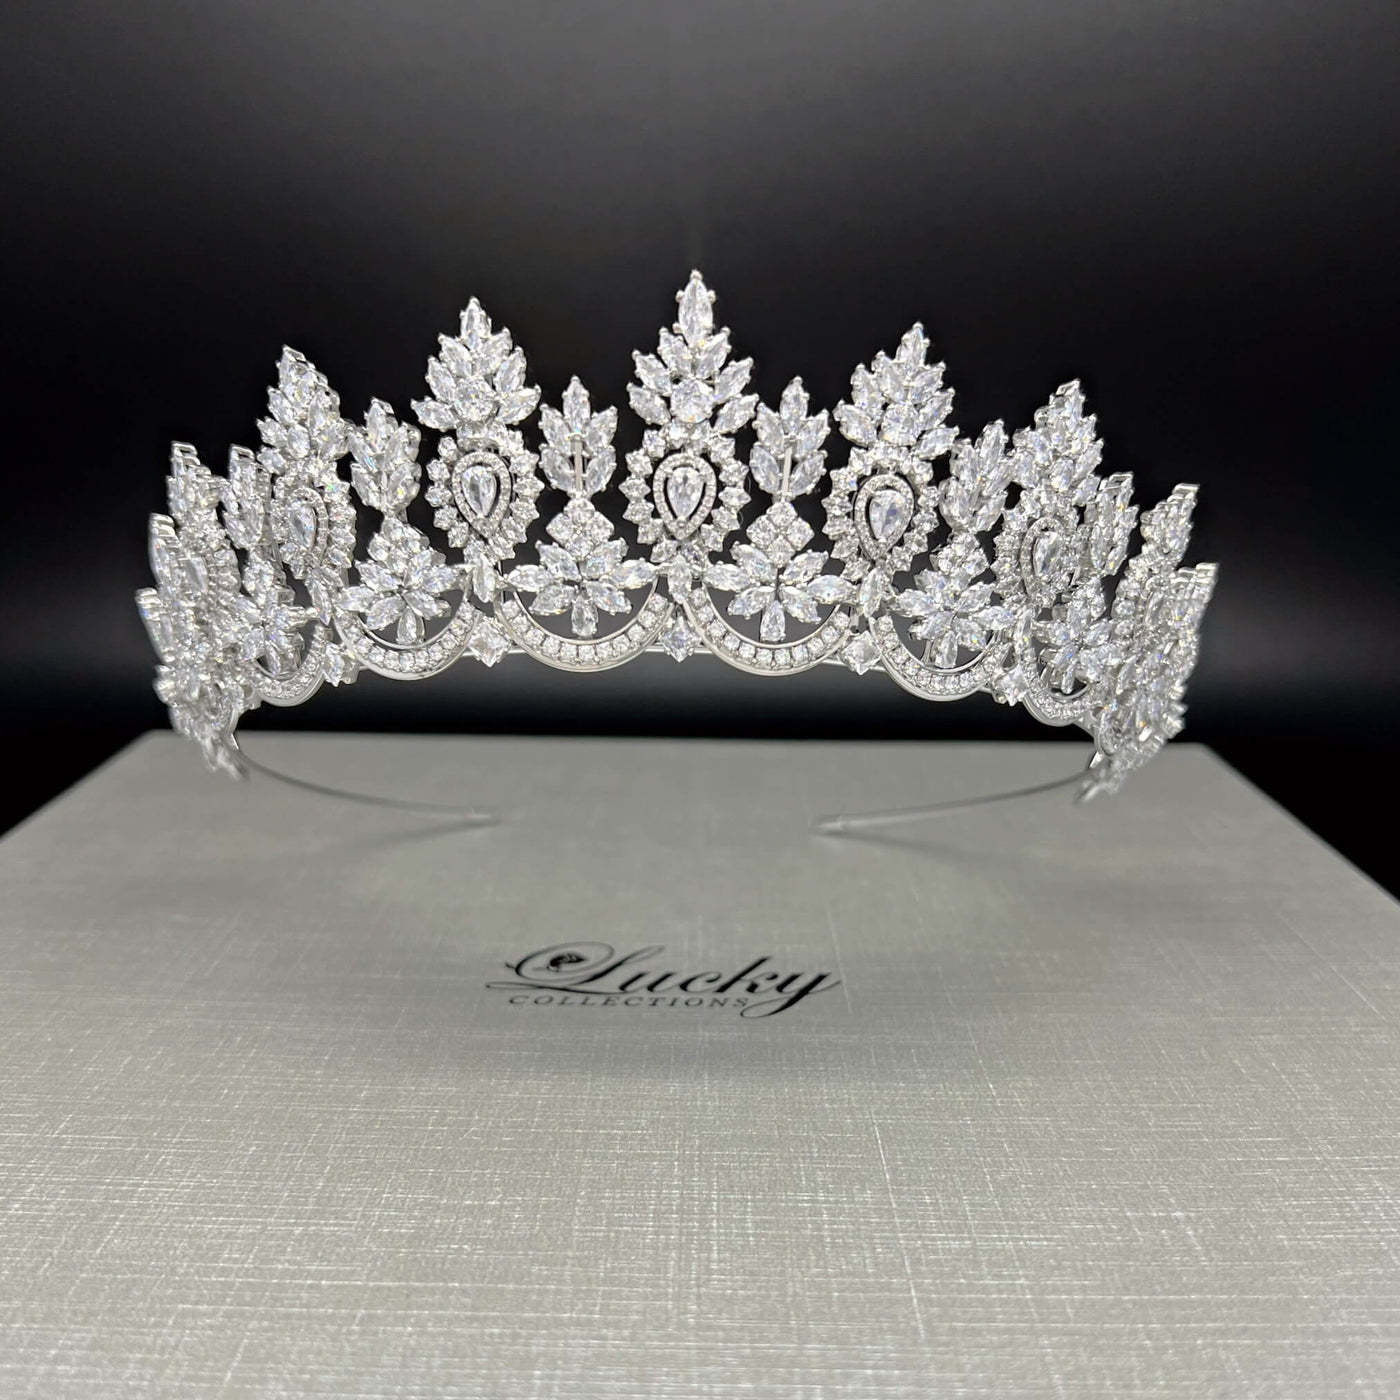 Silver Tiara for Bride, Quinceanera Tiara, Wedding Headpiece, Corona para Boda